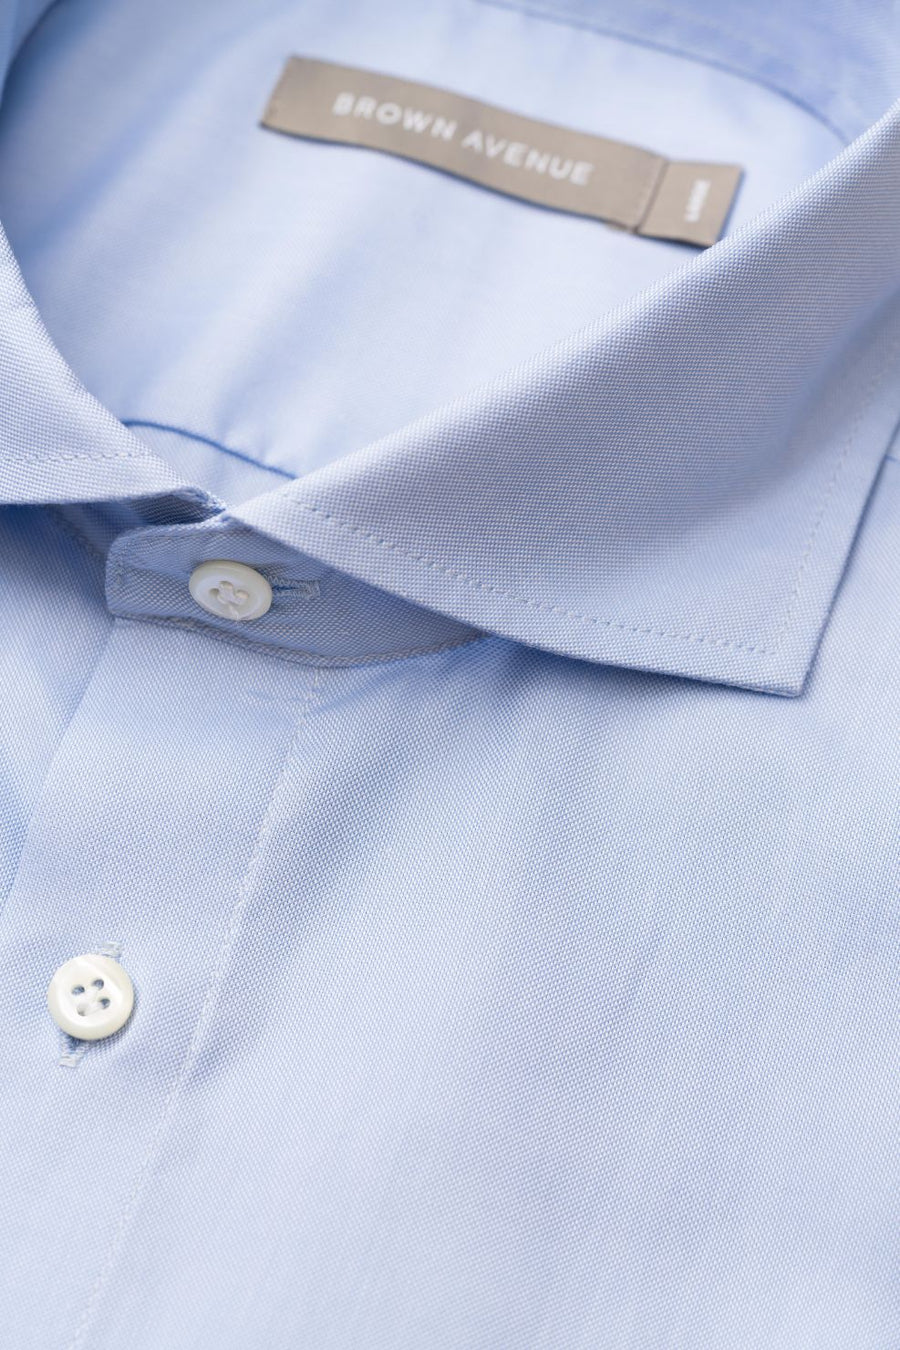 Cut Away Fine Oxford Shirt - Light Blue